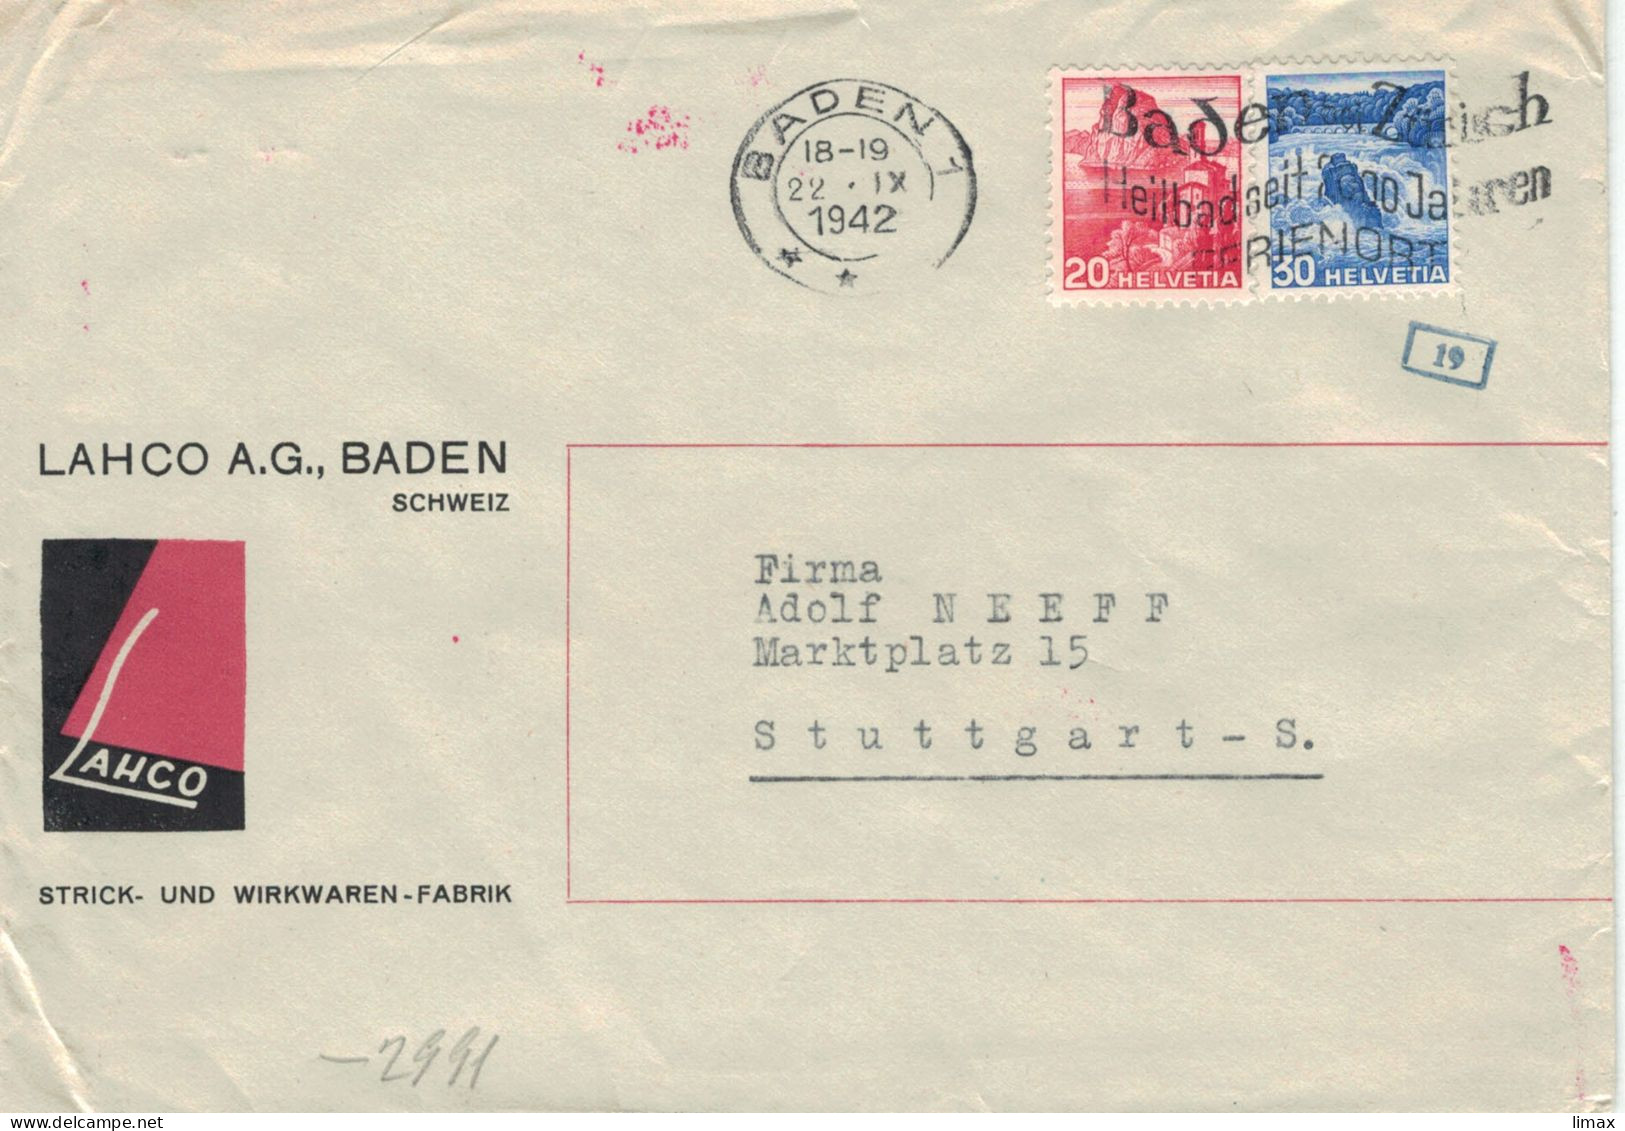 Lahco Strick- & Wirkwaren-Fabrik Baden 1942 > Neeff Stuttgart - Zensur OKW - Heilbad Seit 2000 Jahren Ferienort - Covers & Documents